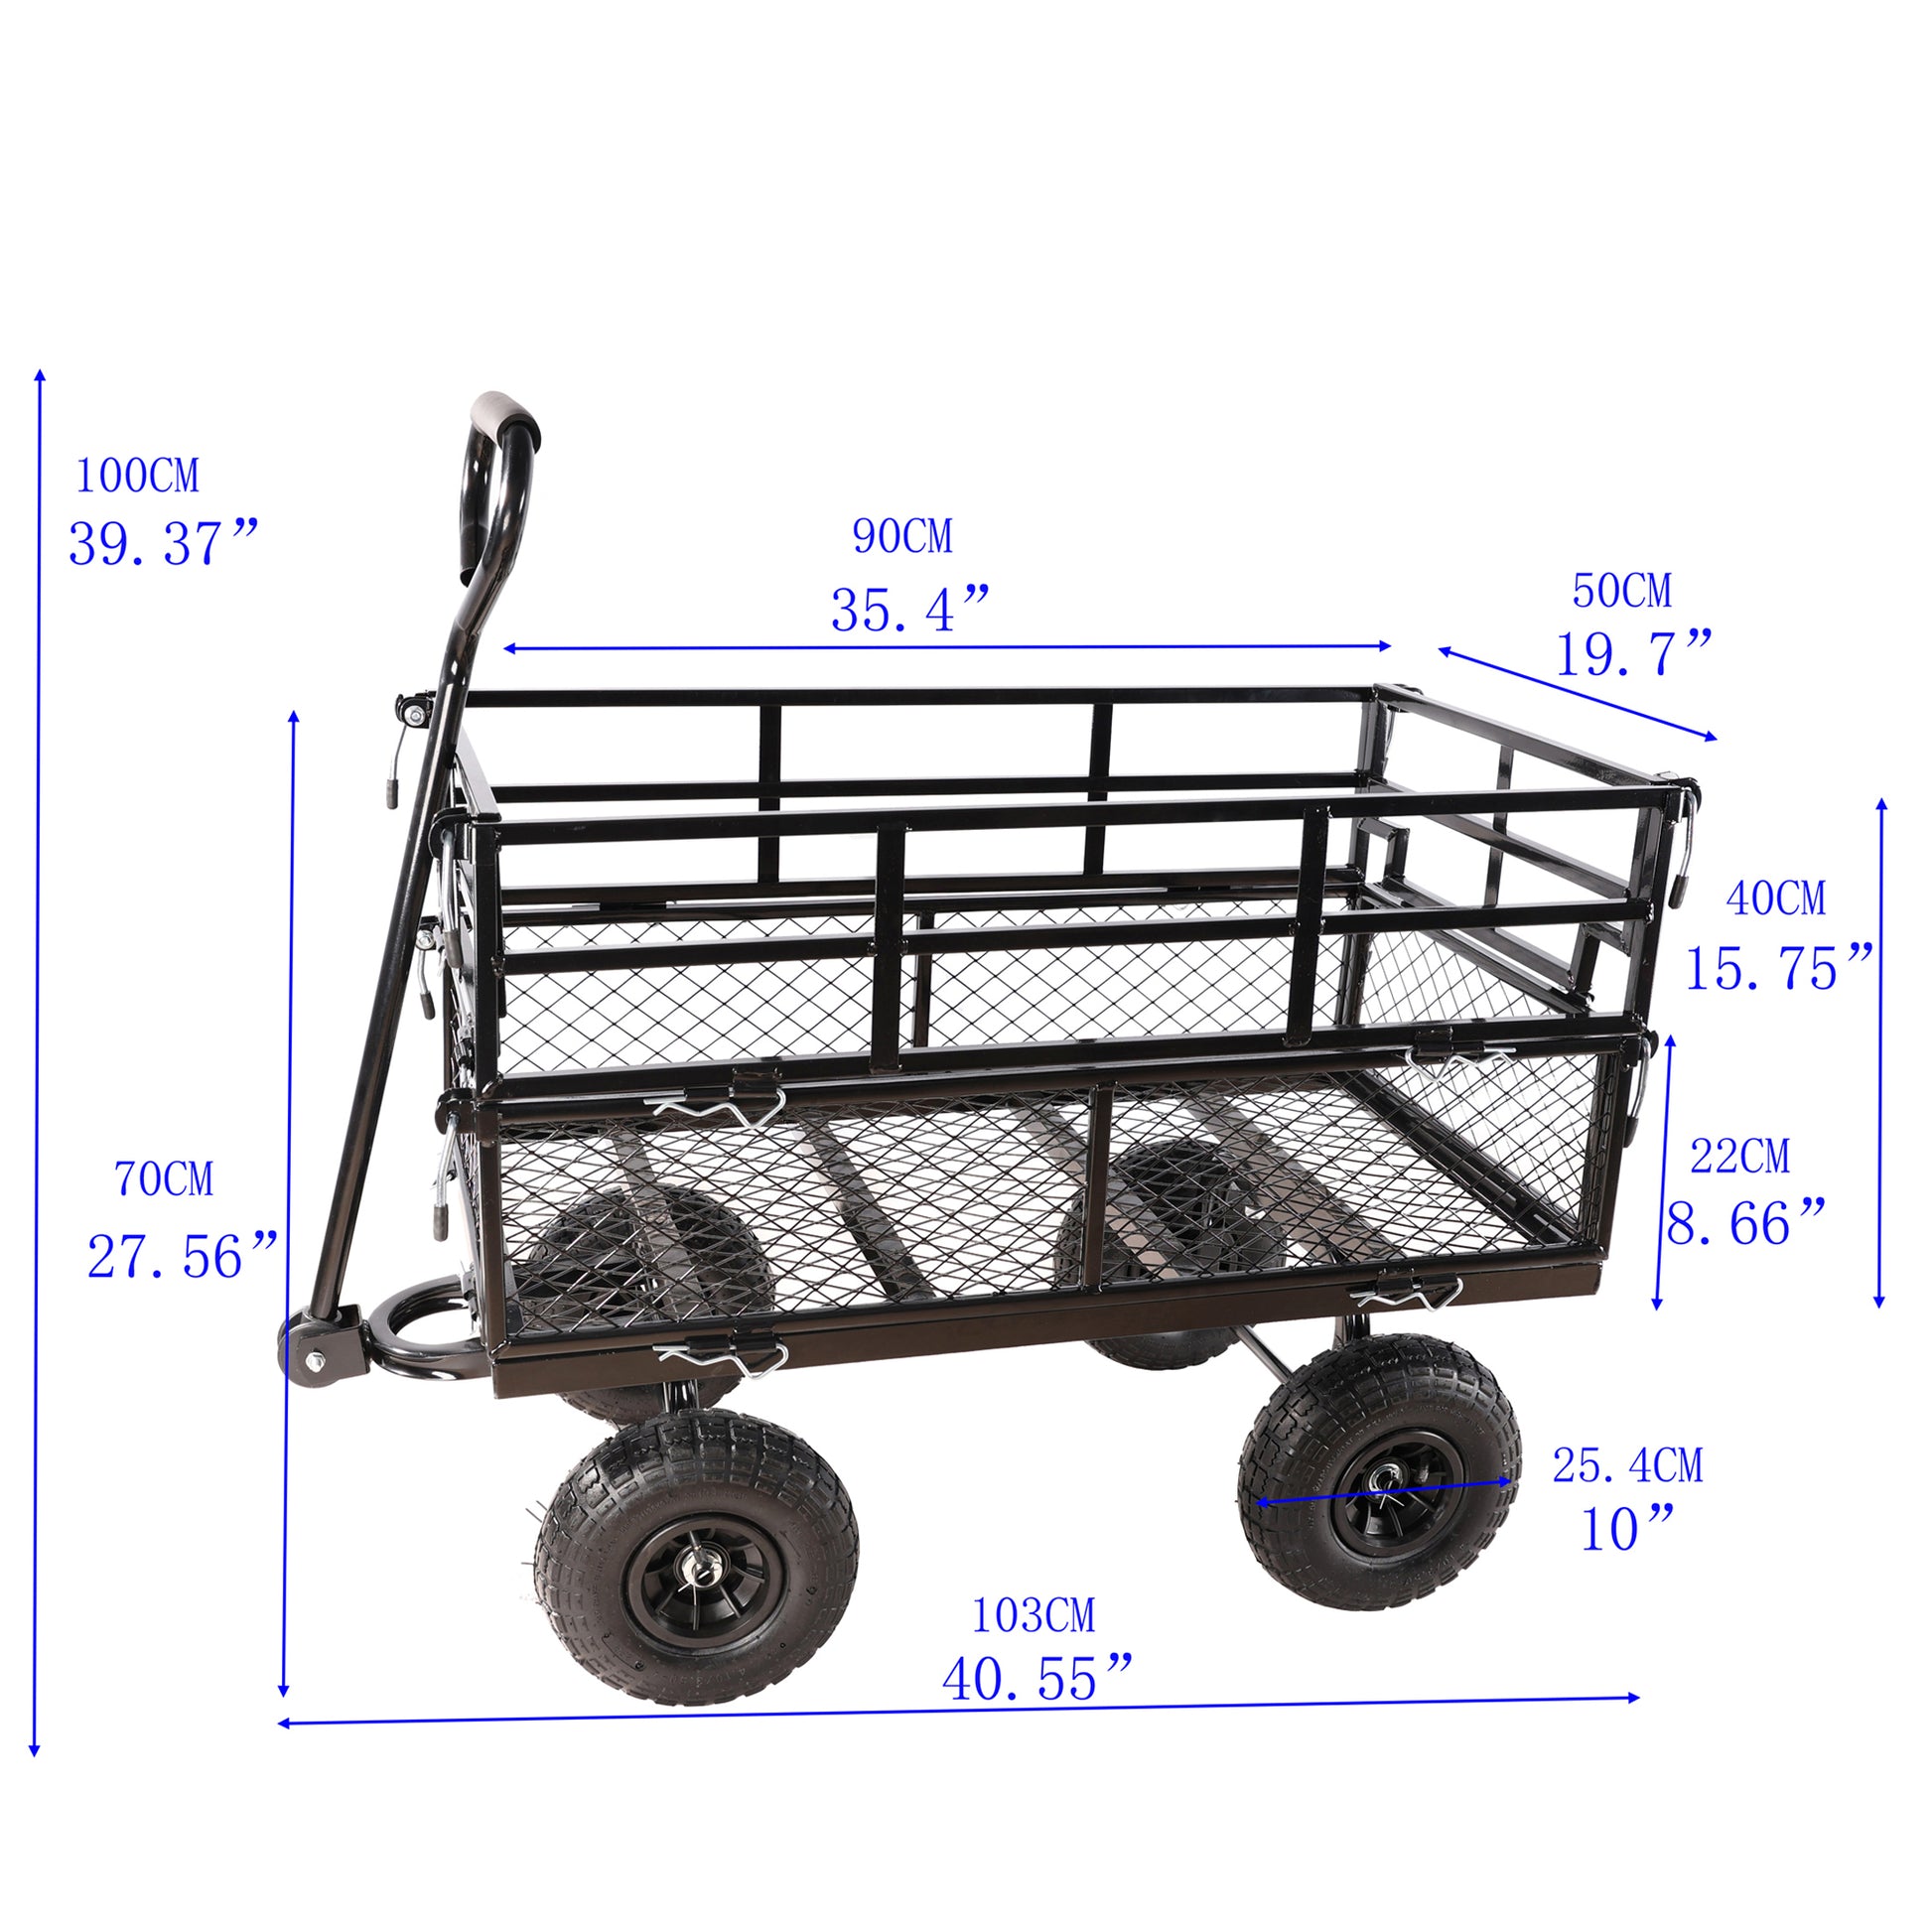 Black Double Fence Utility Cart Wagon Cart Garden